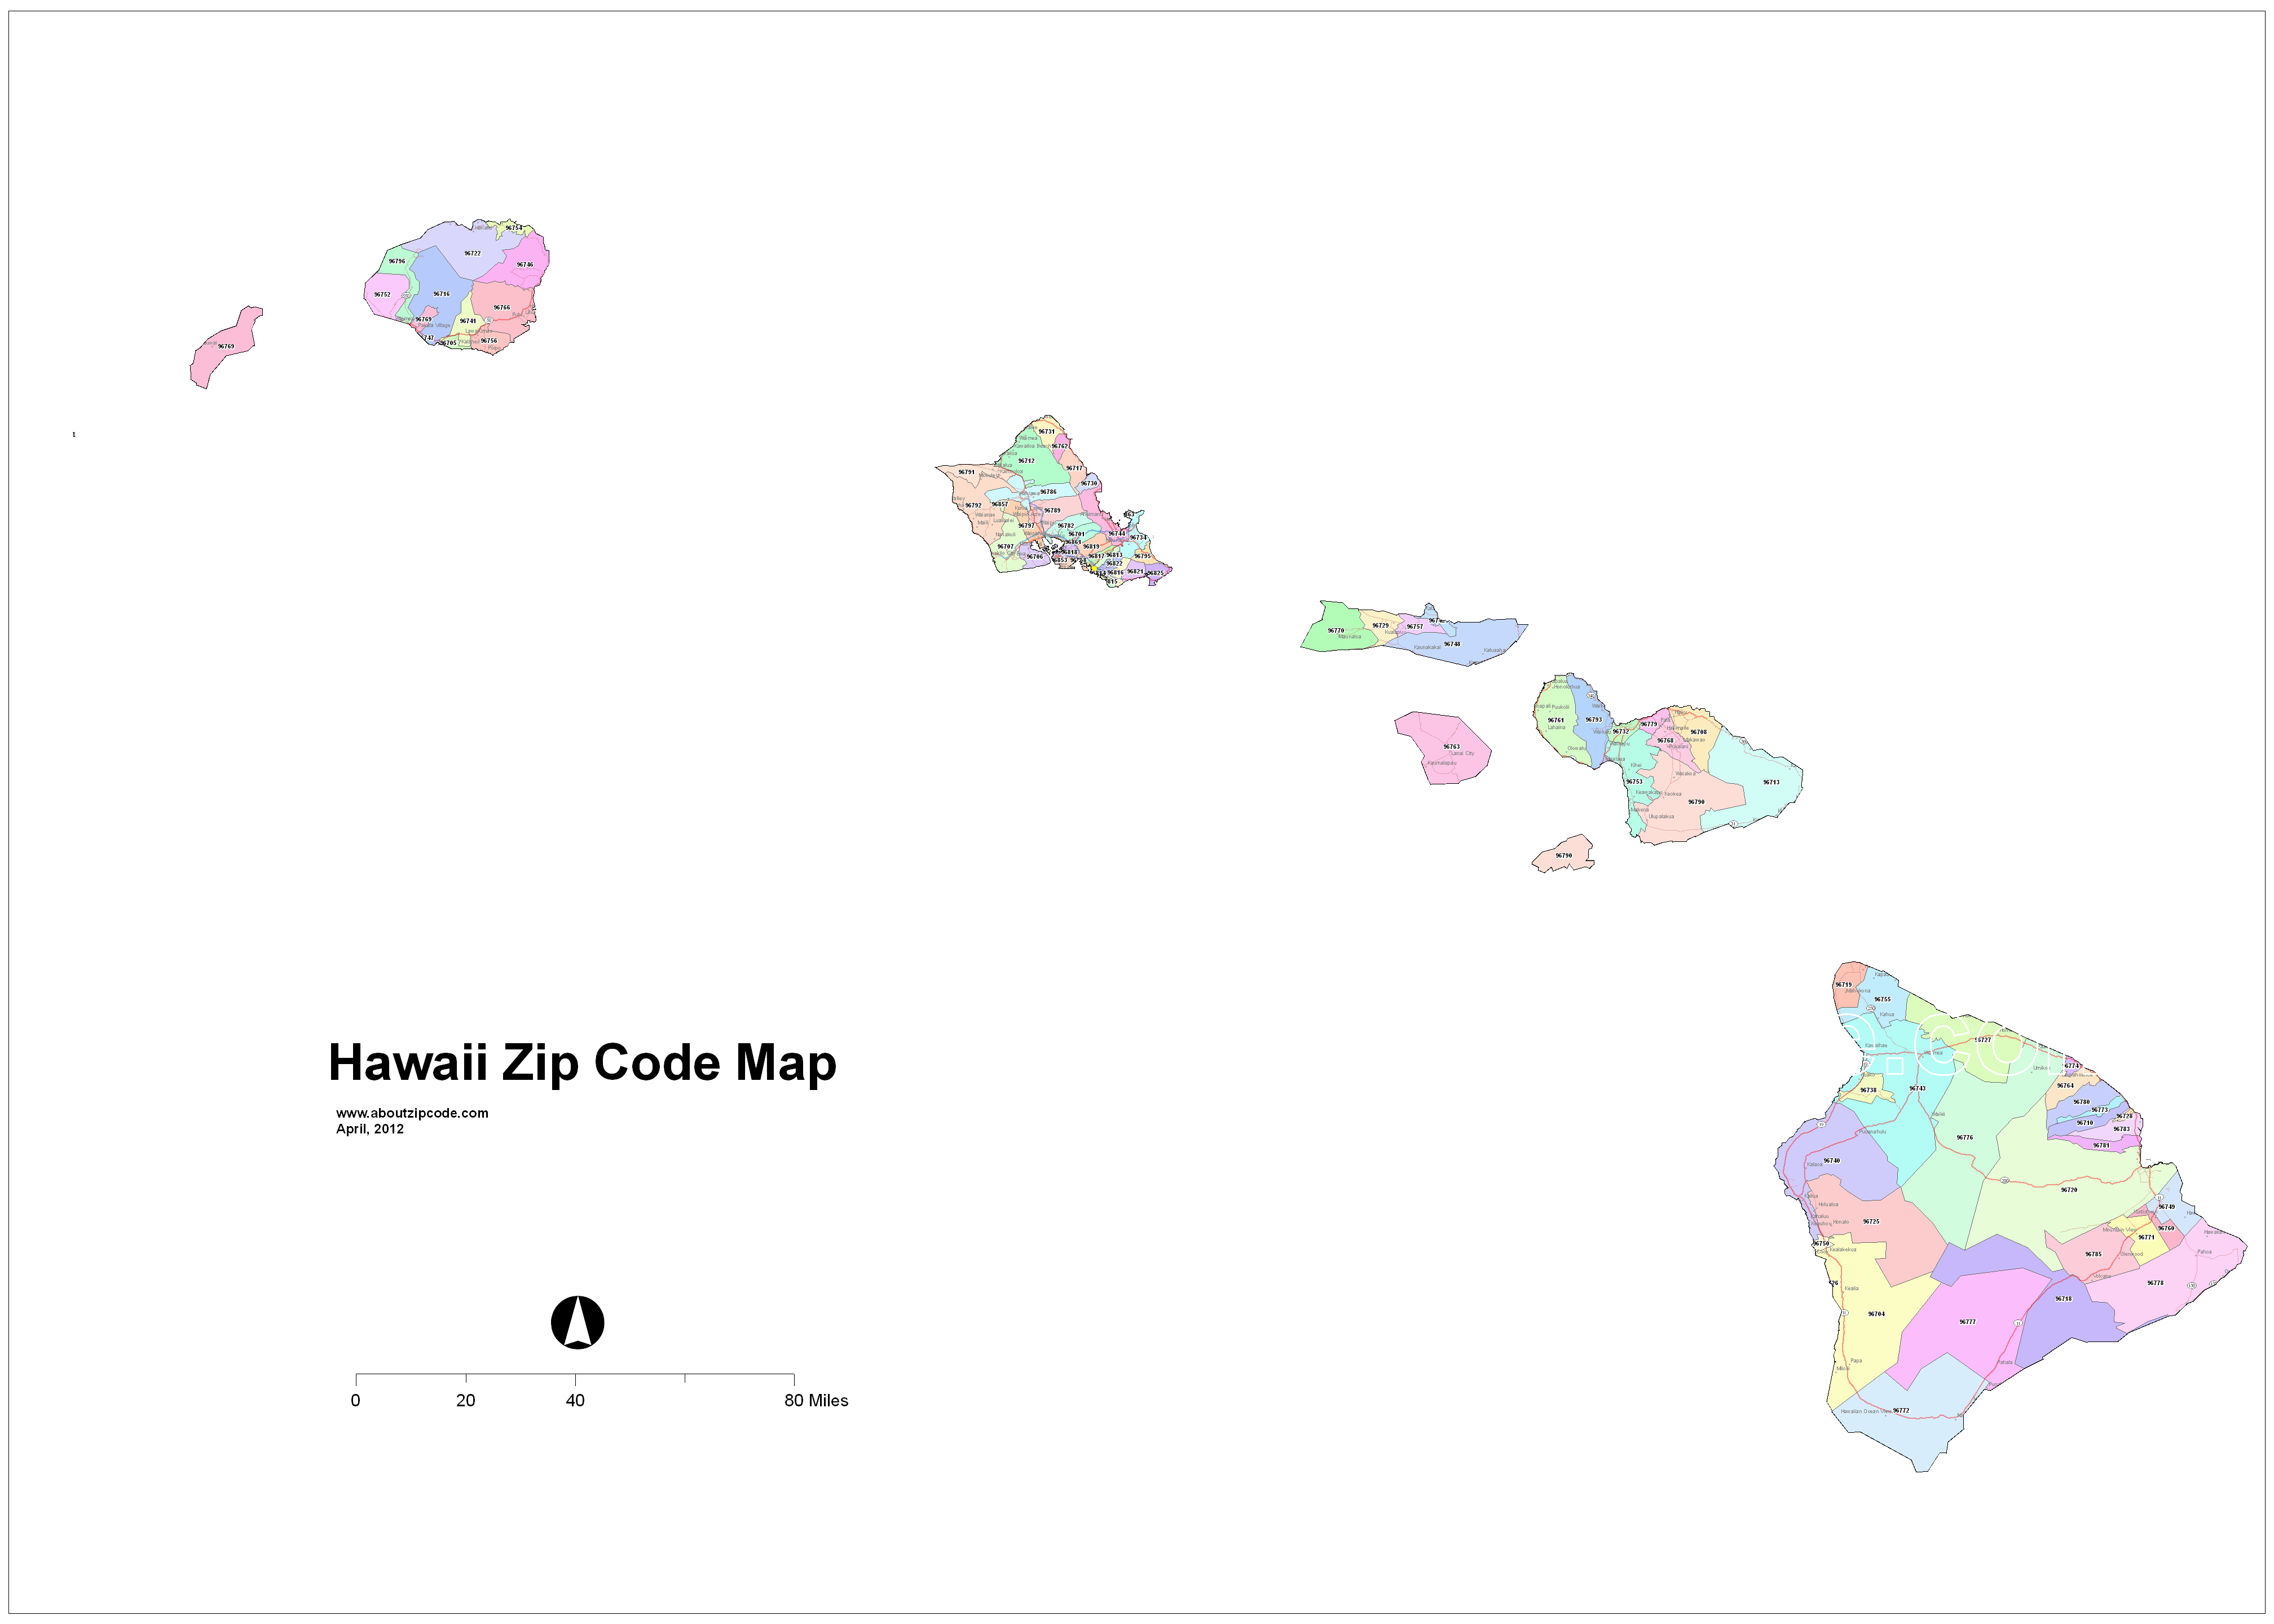 hilo hawaii zip code map Hawaii Zip Code Maps Free Hawaii Zip Code Maps hilo hawaii zip code map